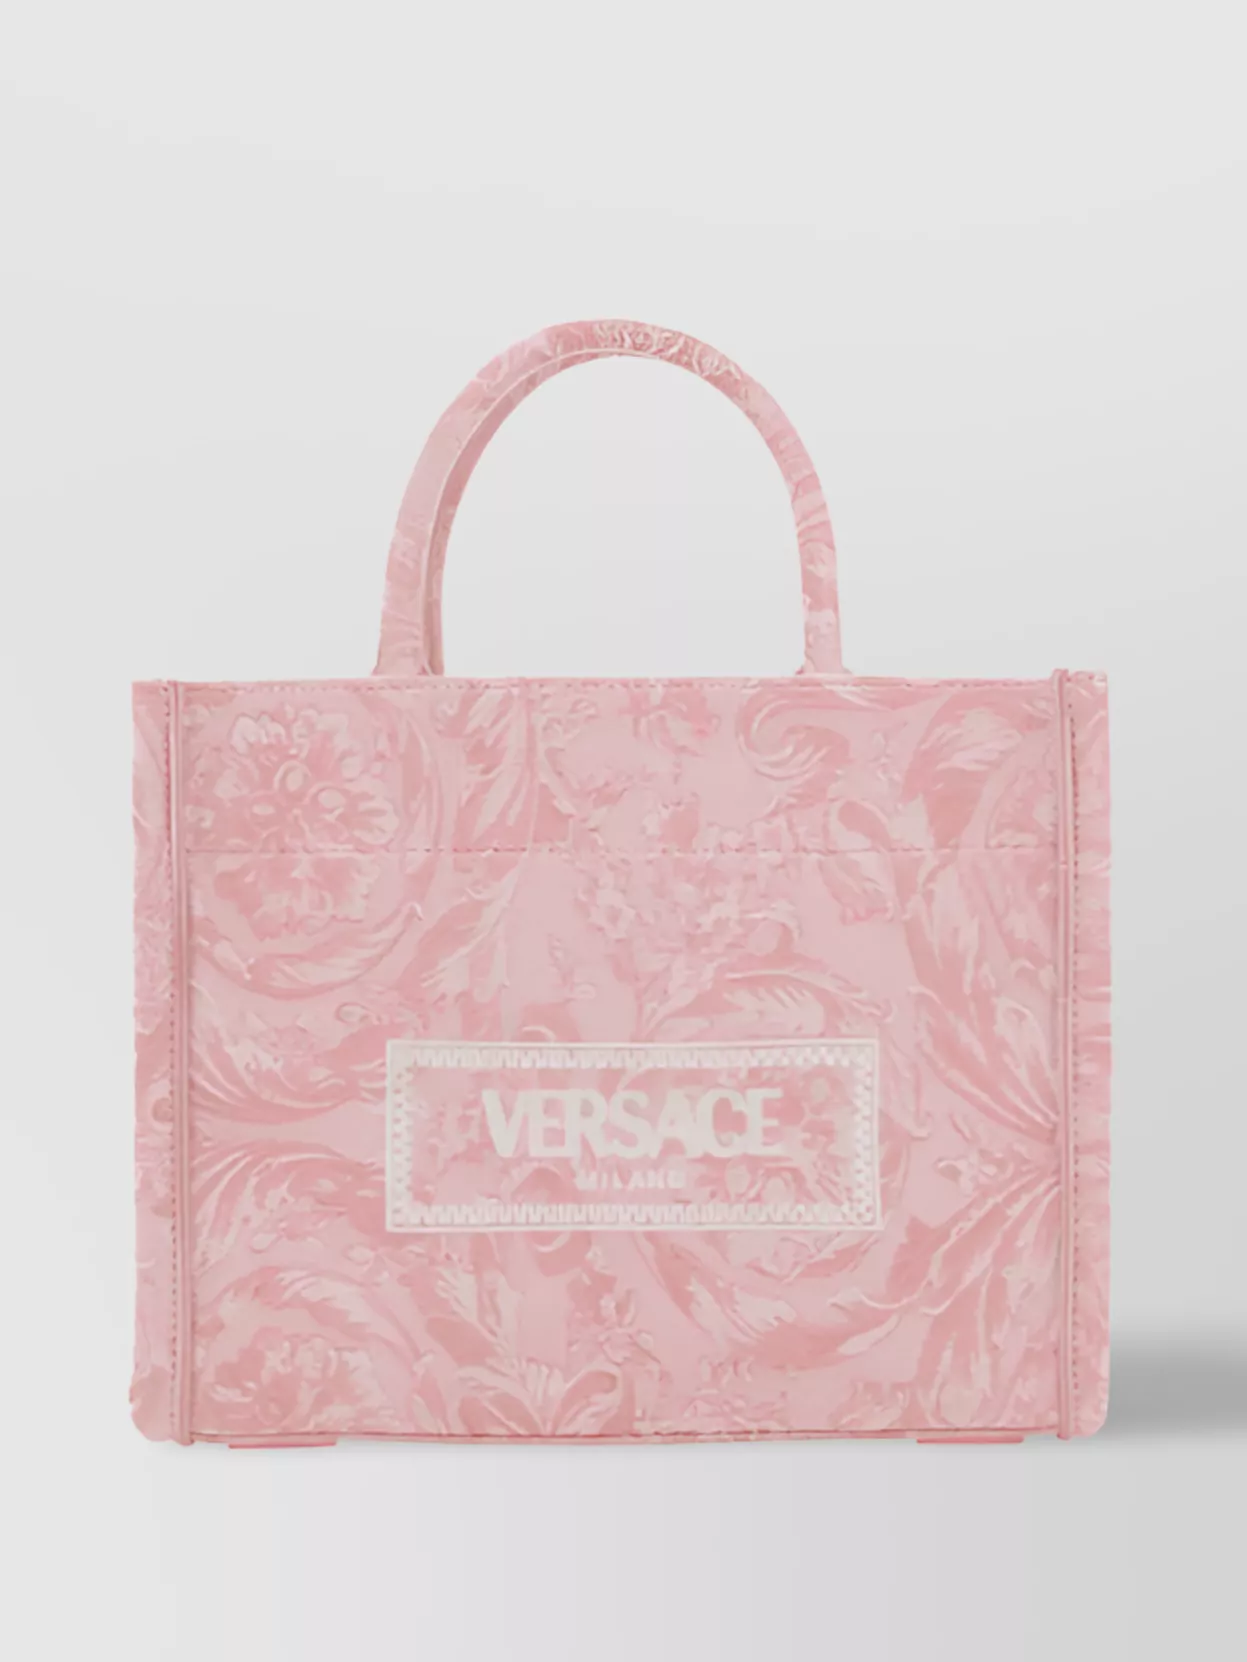 Versace Jacquard Barocco Tote Bag